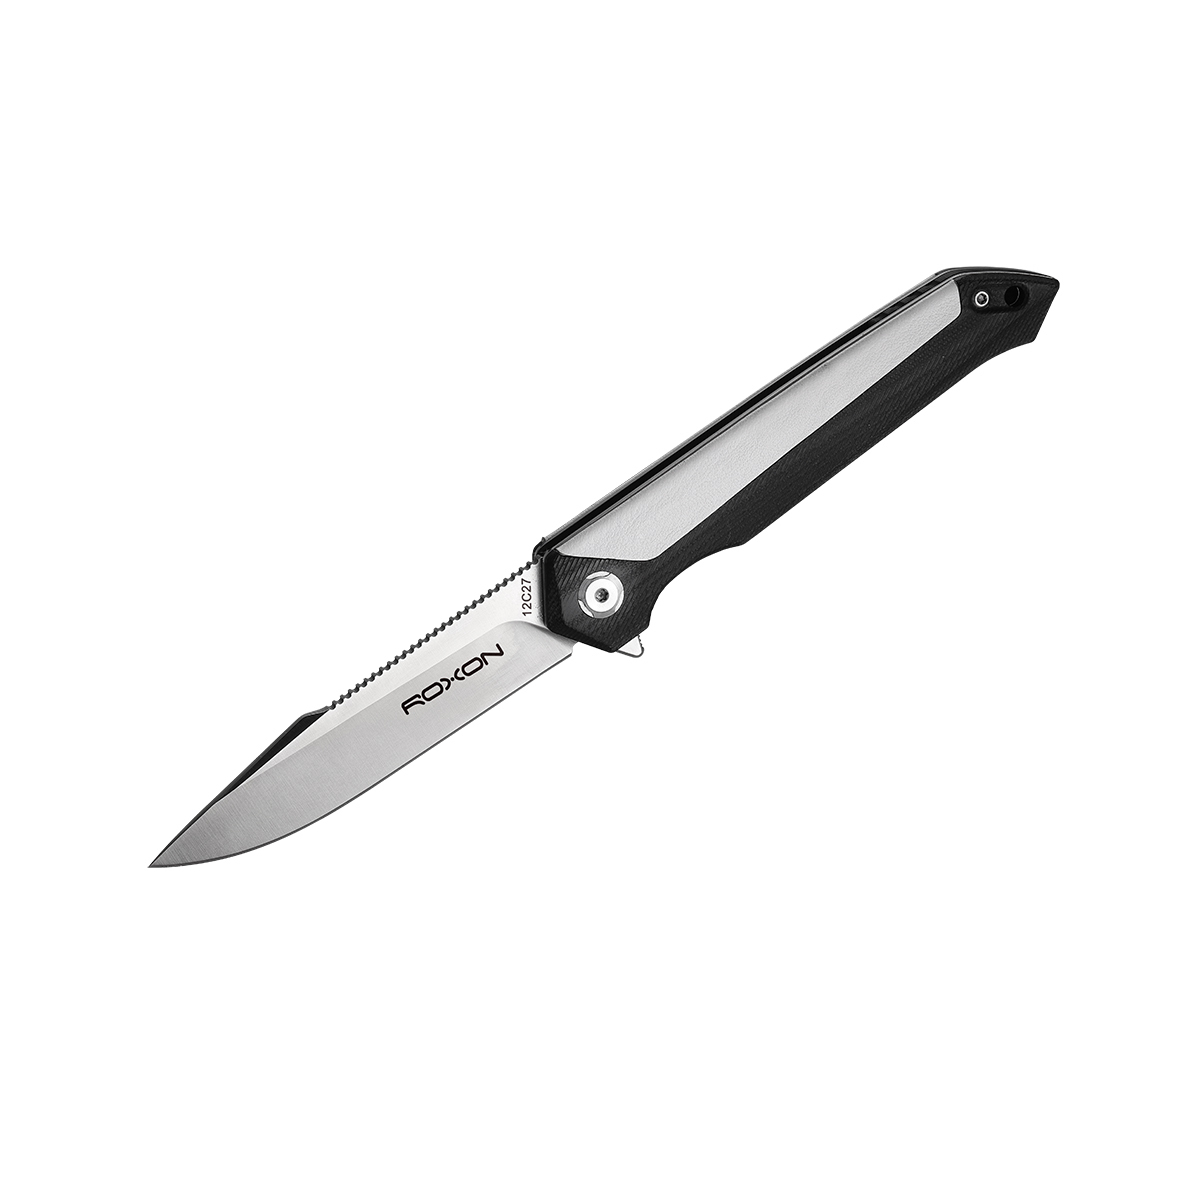 Складной нож Roxon K3, сталь sandvik 12C27, рукоять G10/кожа, белый - фото 1